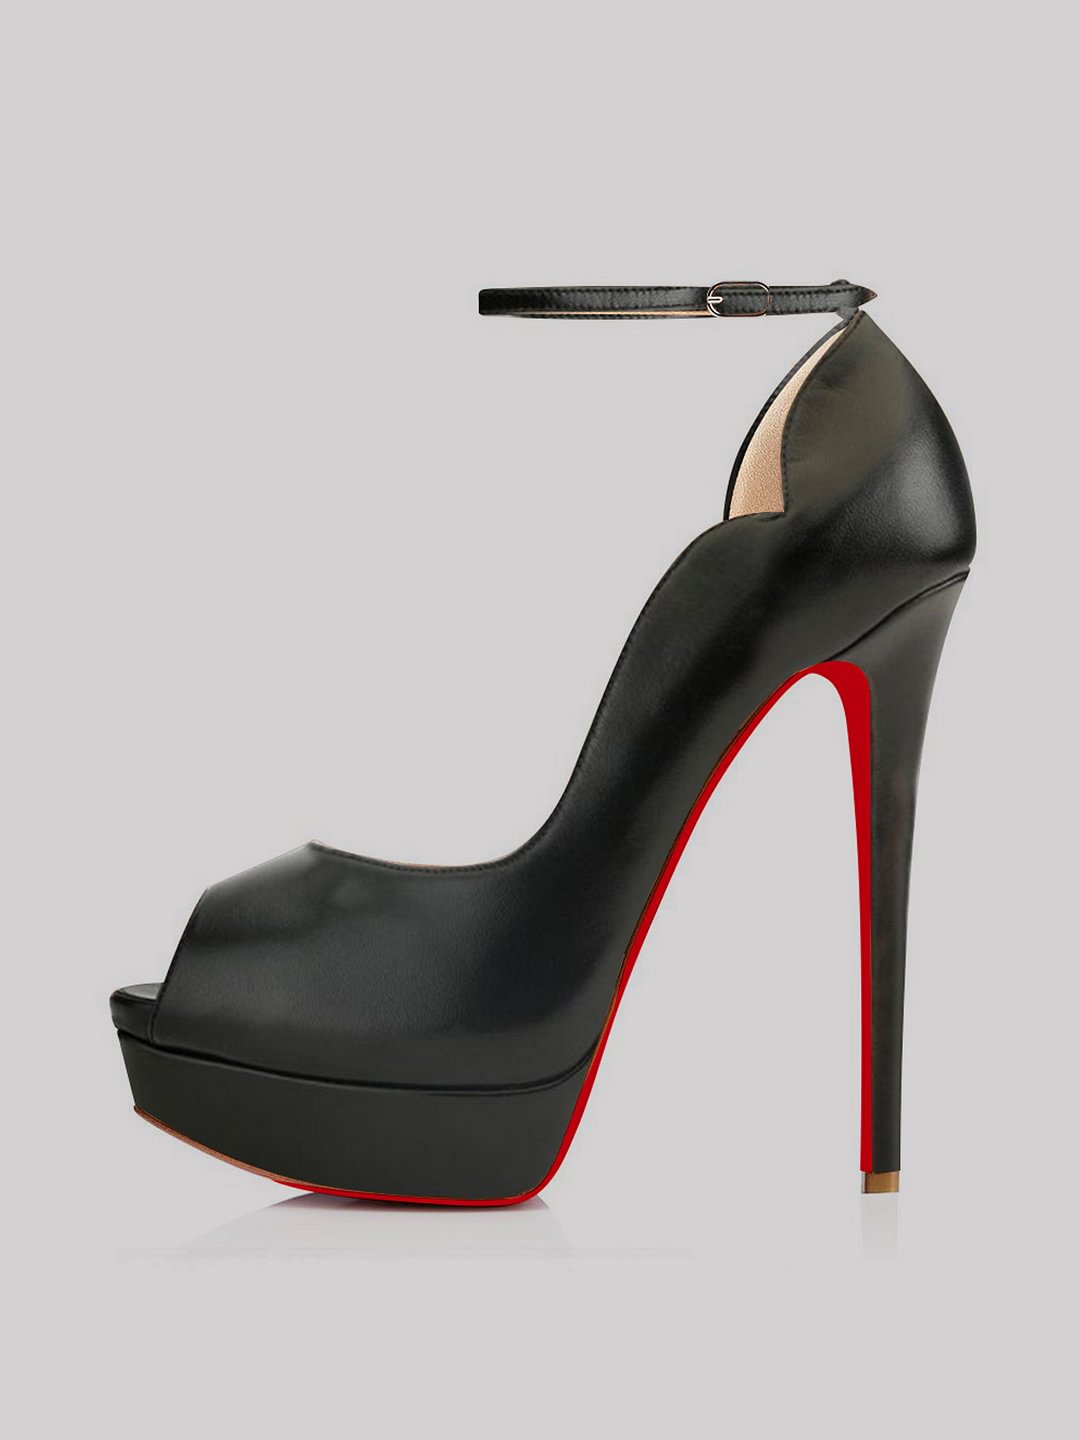 150mm Women's Super High Platform Ankle Strap Red Bottom Pumps Matte Sandals